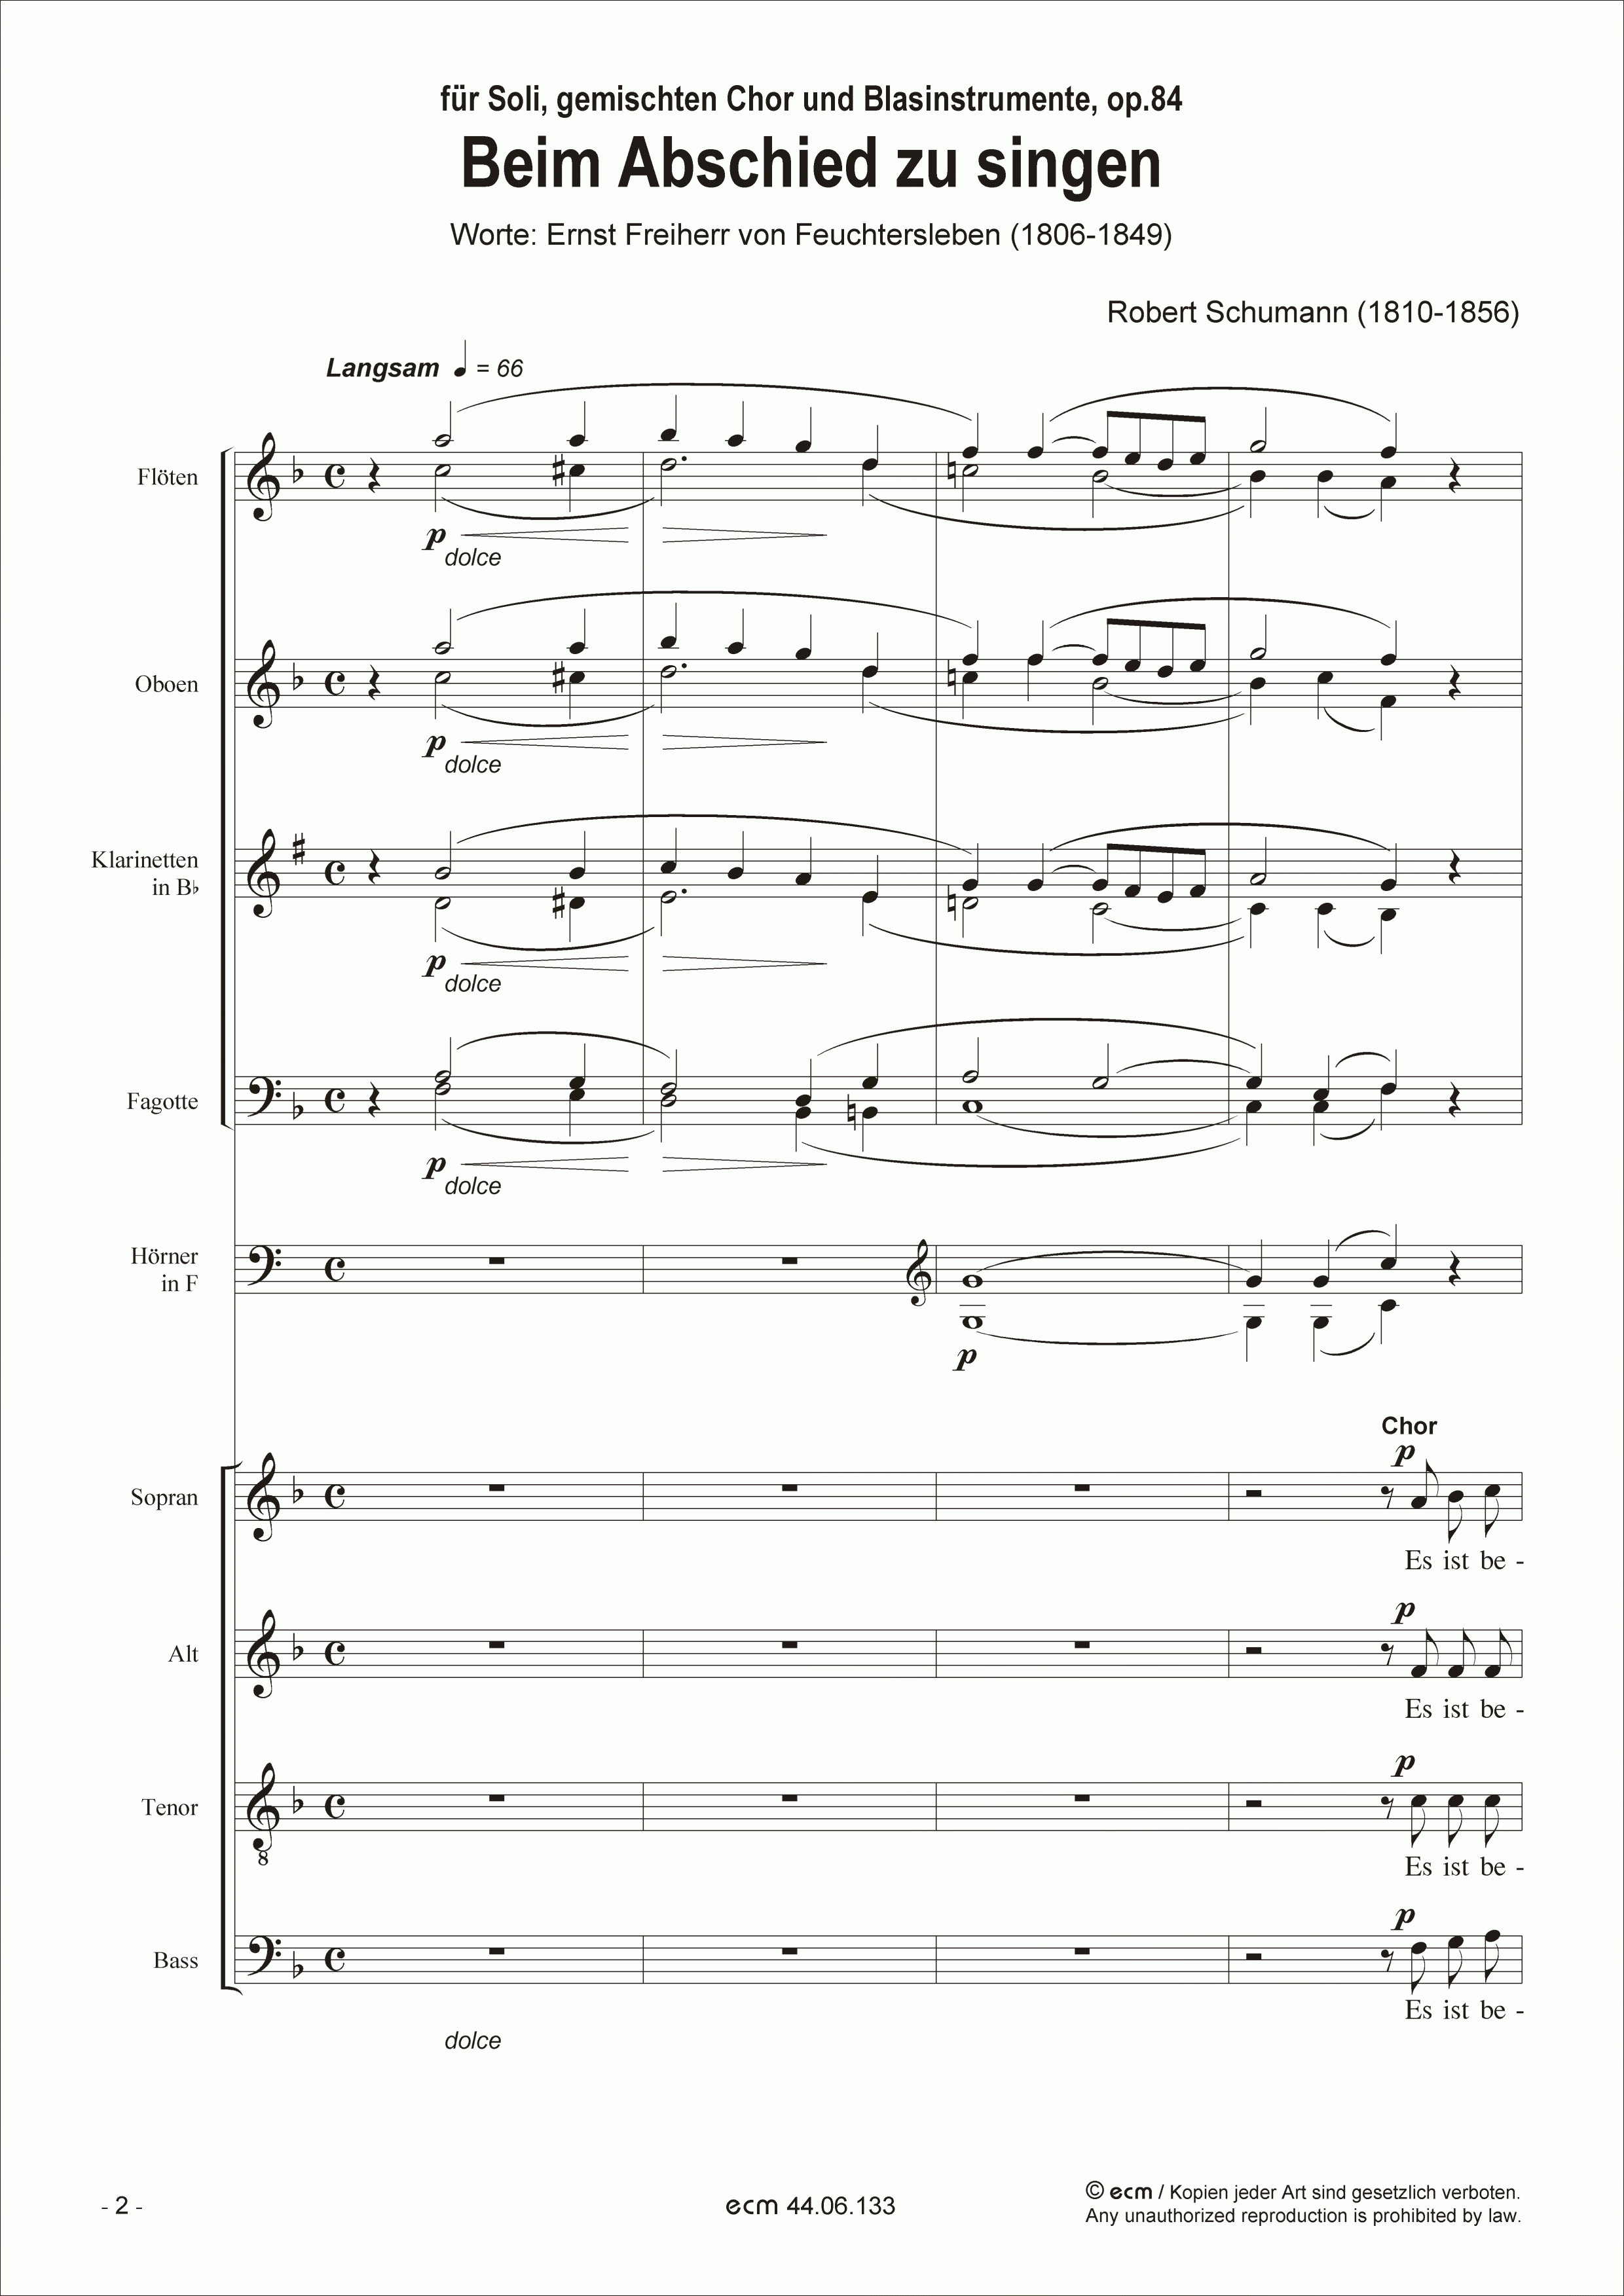 Beim Abschied zu singen (brass version) op.84